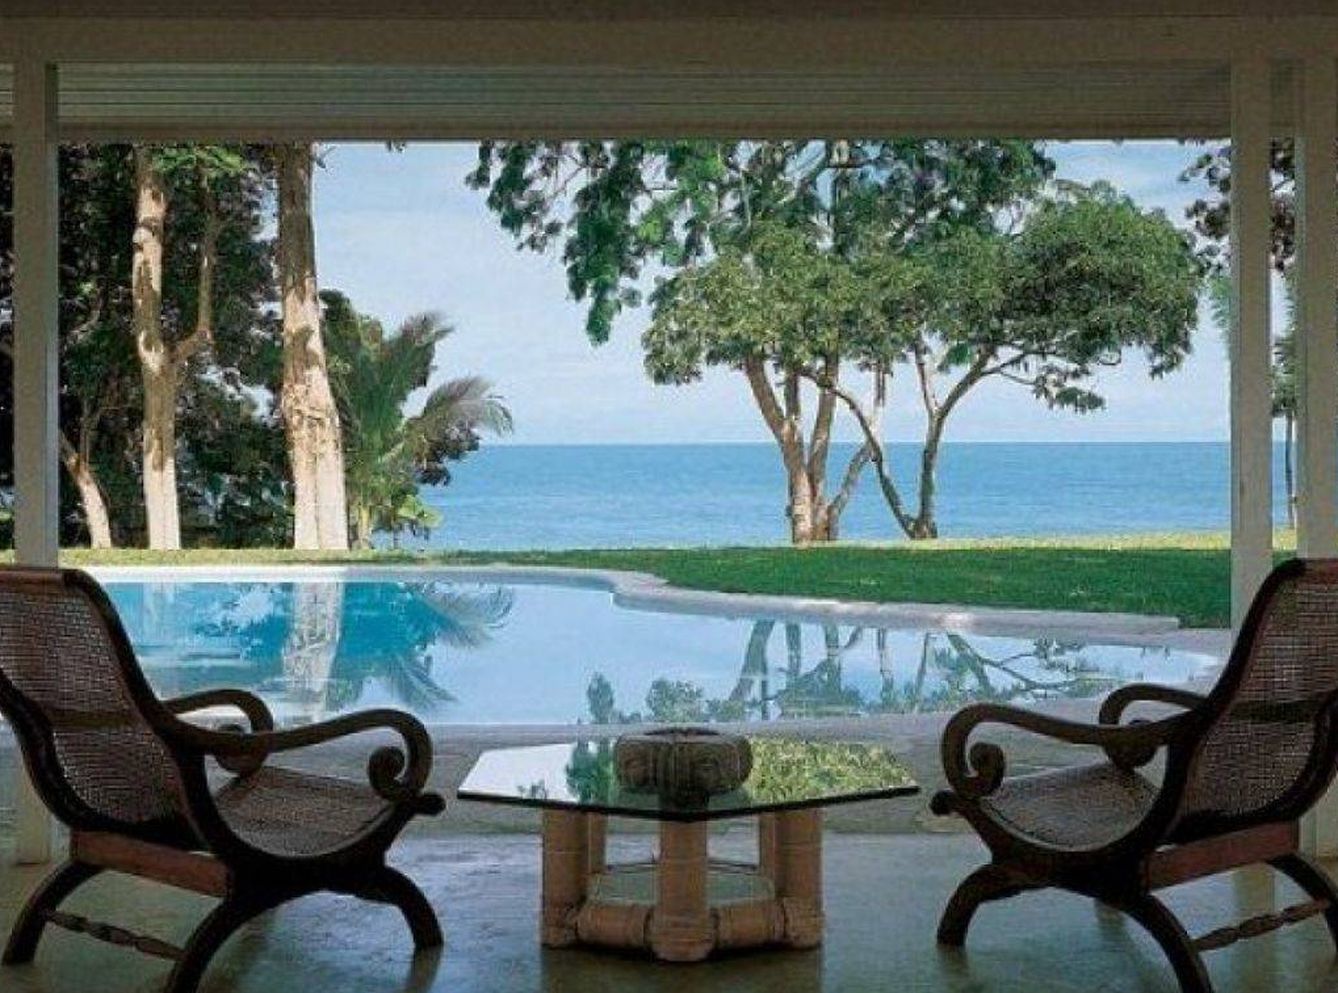 La casa de Ian Fleming en Jamaica, con habitación 007. (Cortesía)